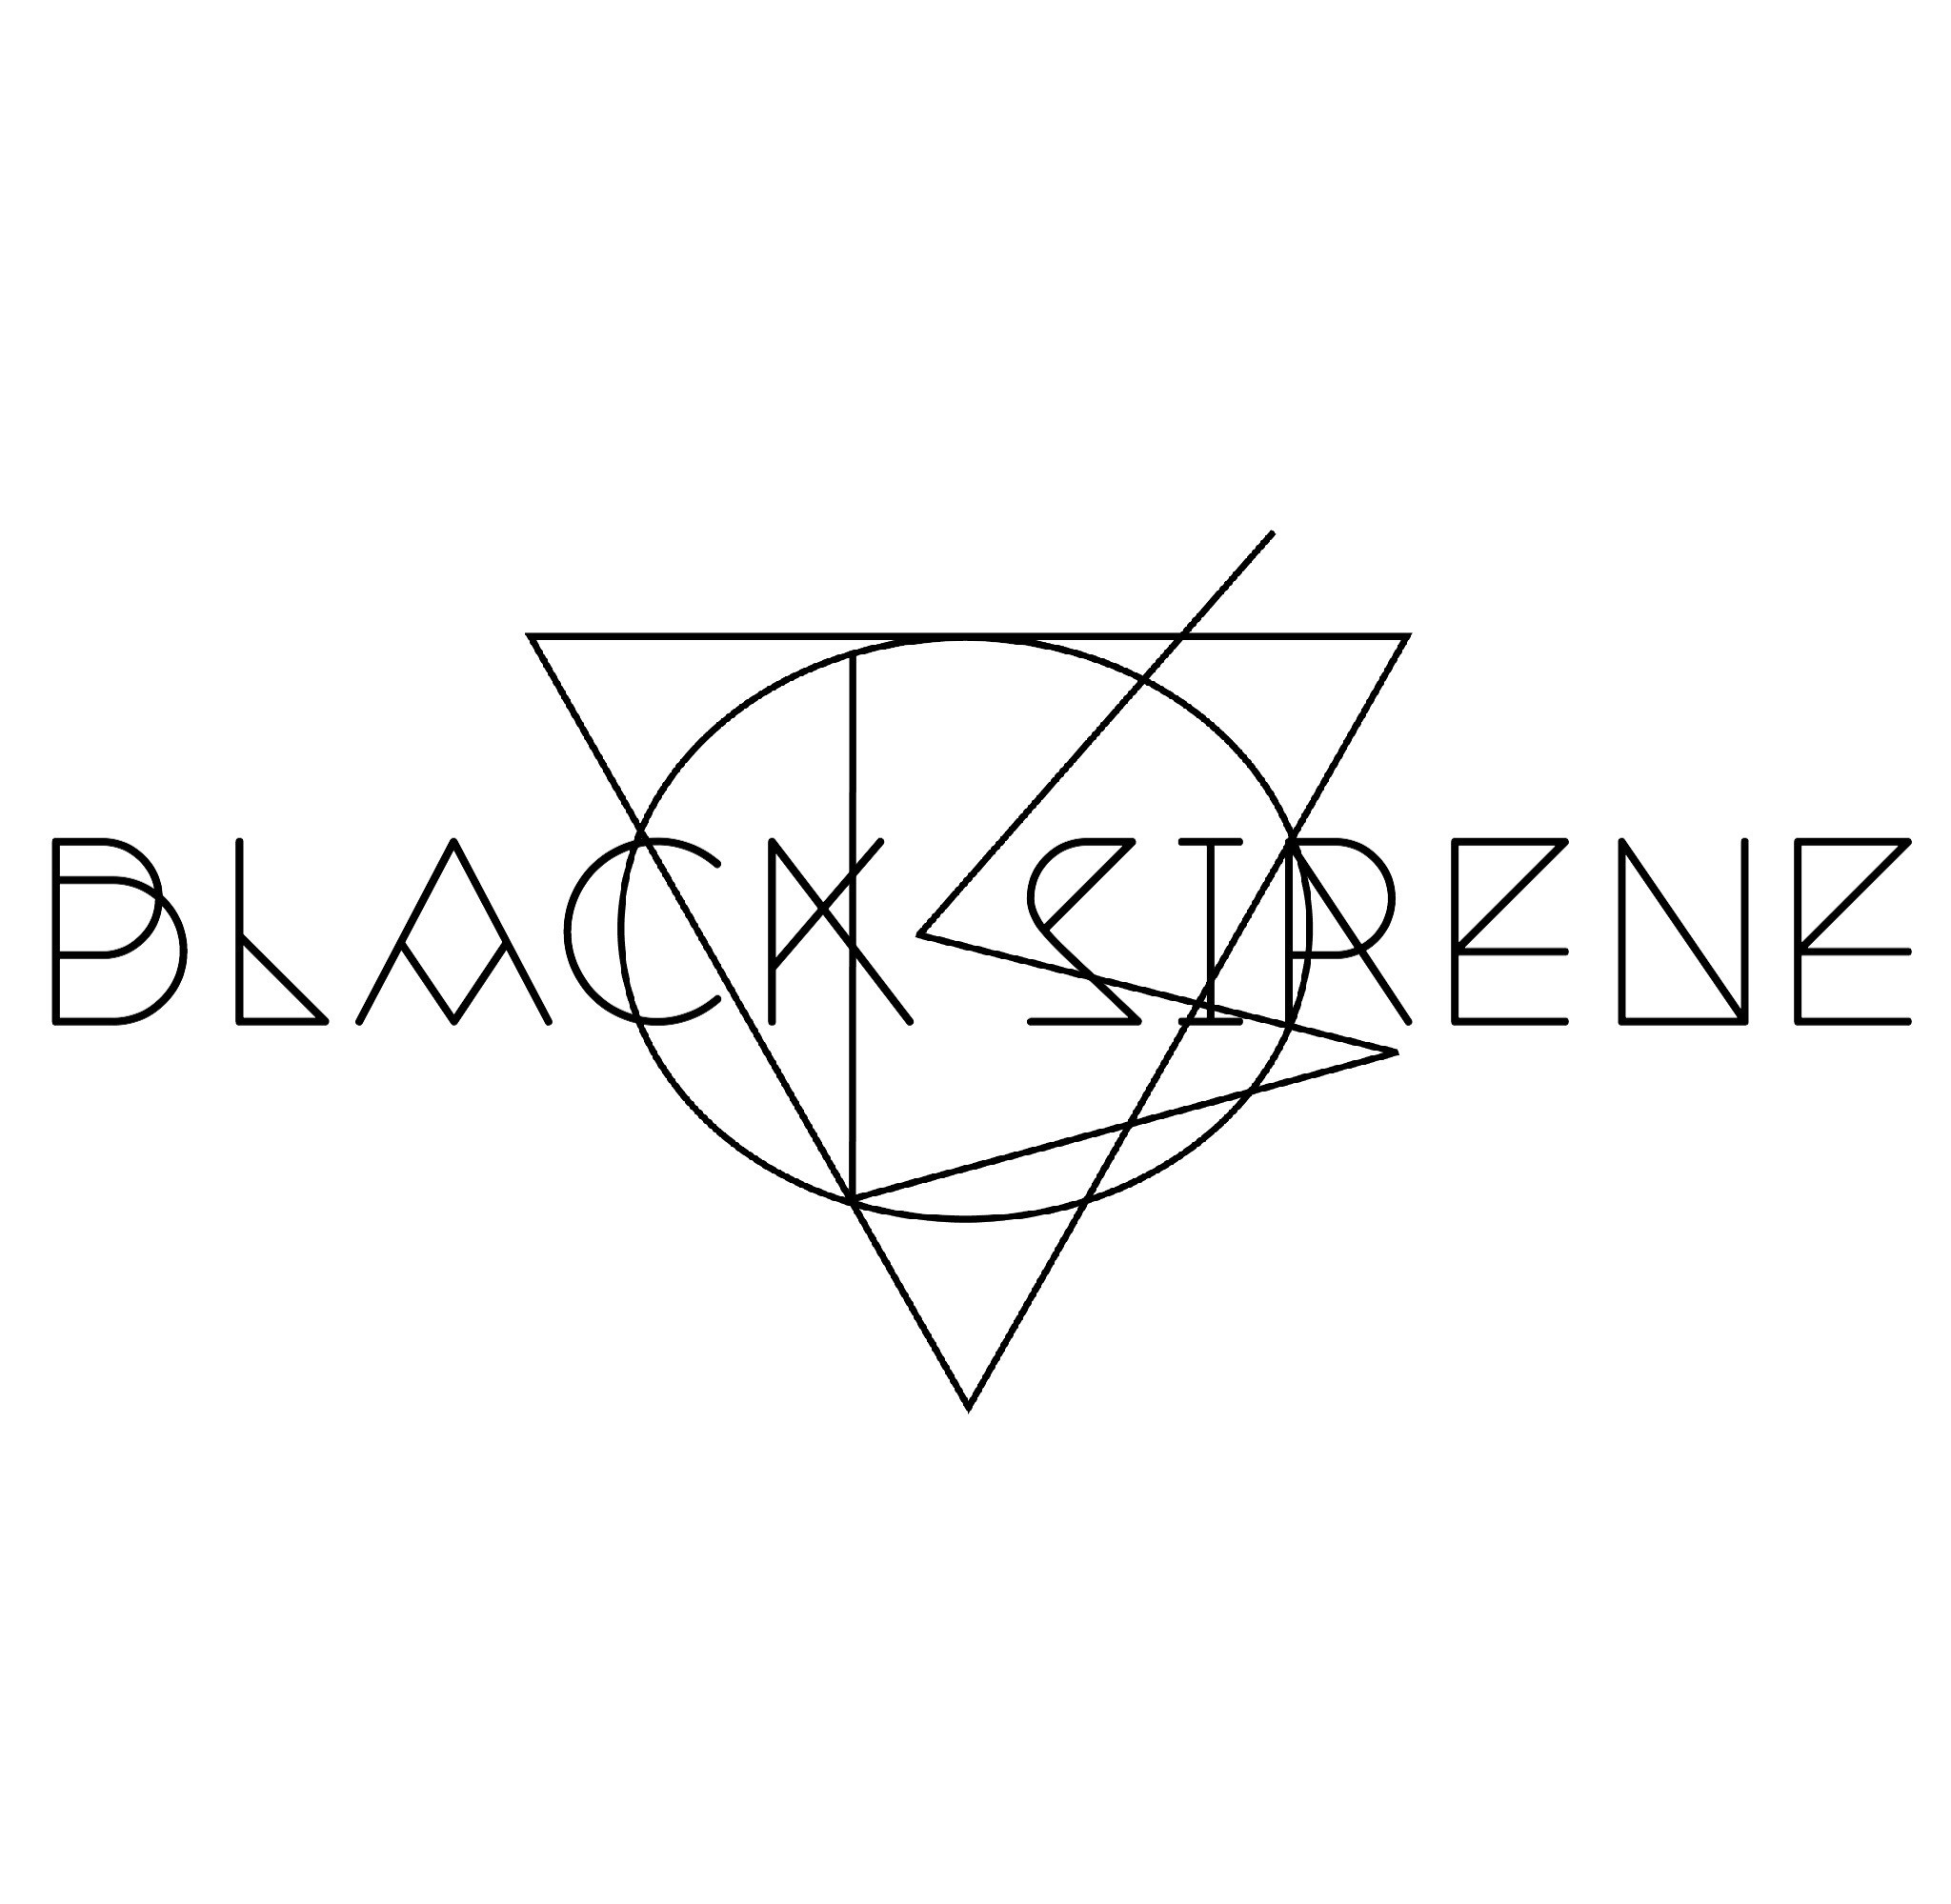 Black Sirene